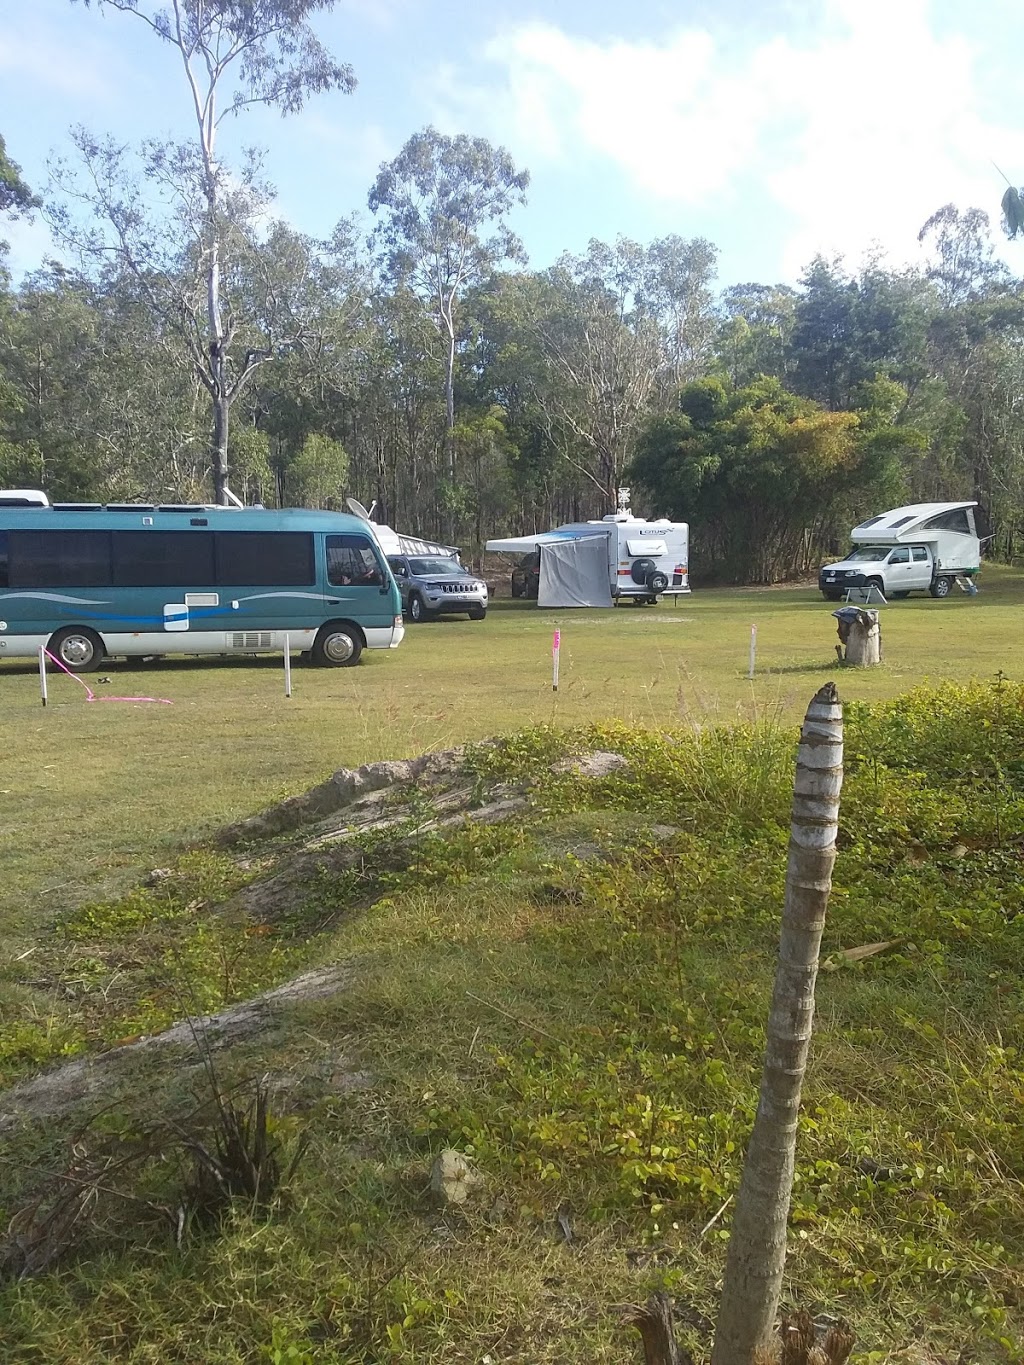 Collie farm caravans & camping | 426 Fingerboard Rd, Miriam Vale QLD 4677, Australia | Phone: 0402 567 344